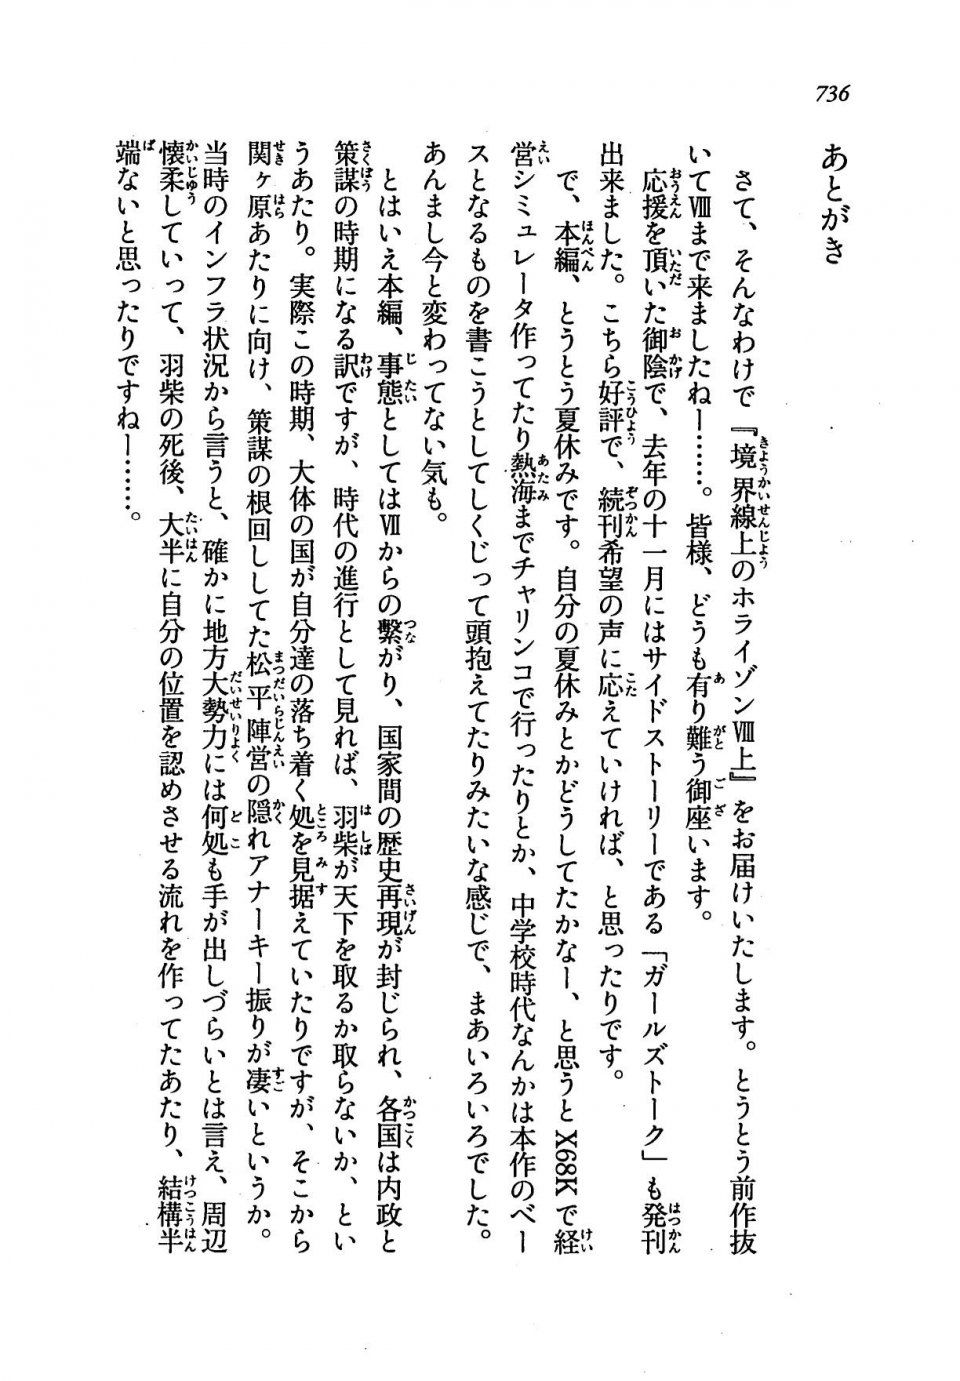 Kyoukai Senjou no Horizon LN Vol 19(8A) - Photo #736